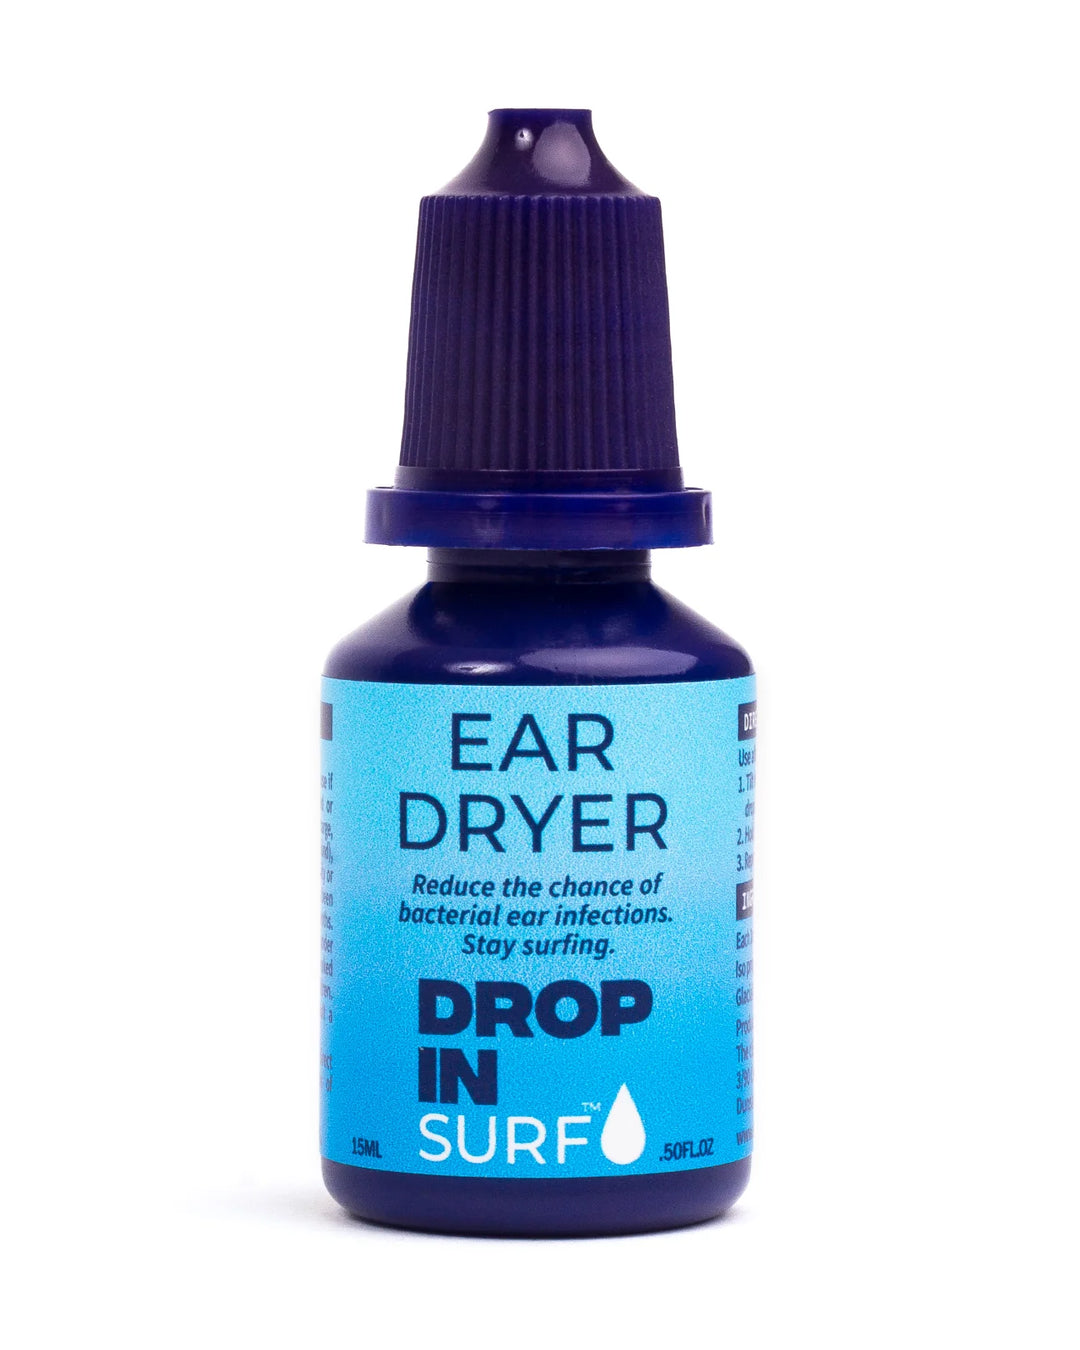 Drop In Surf: Ear Dryer